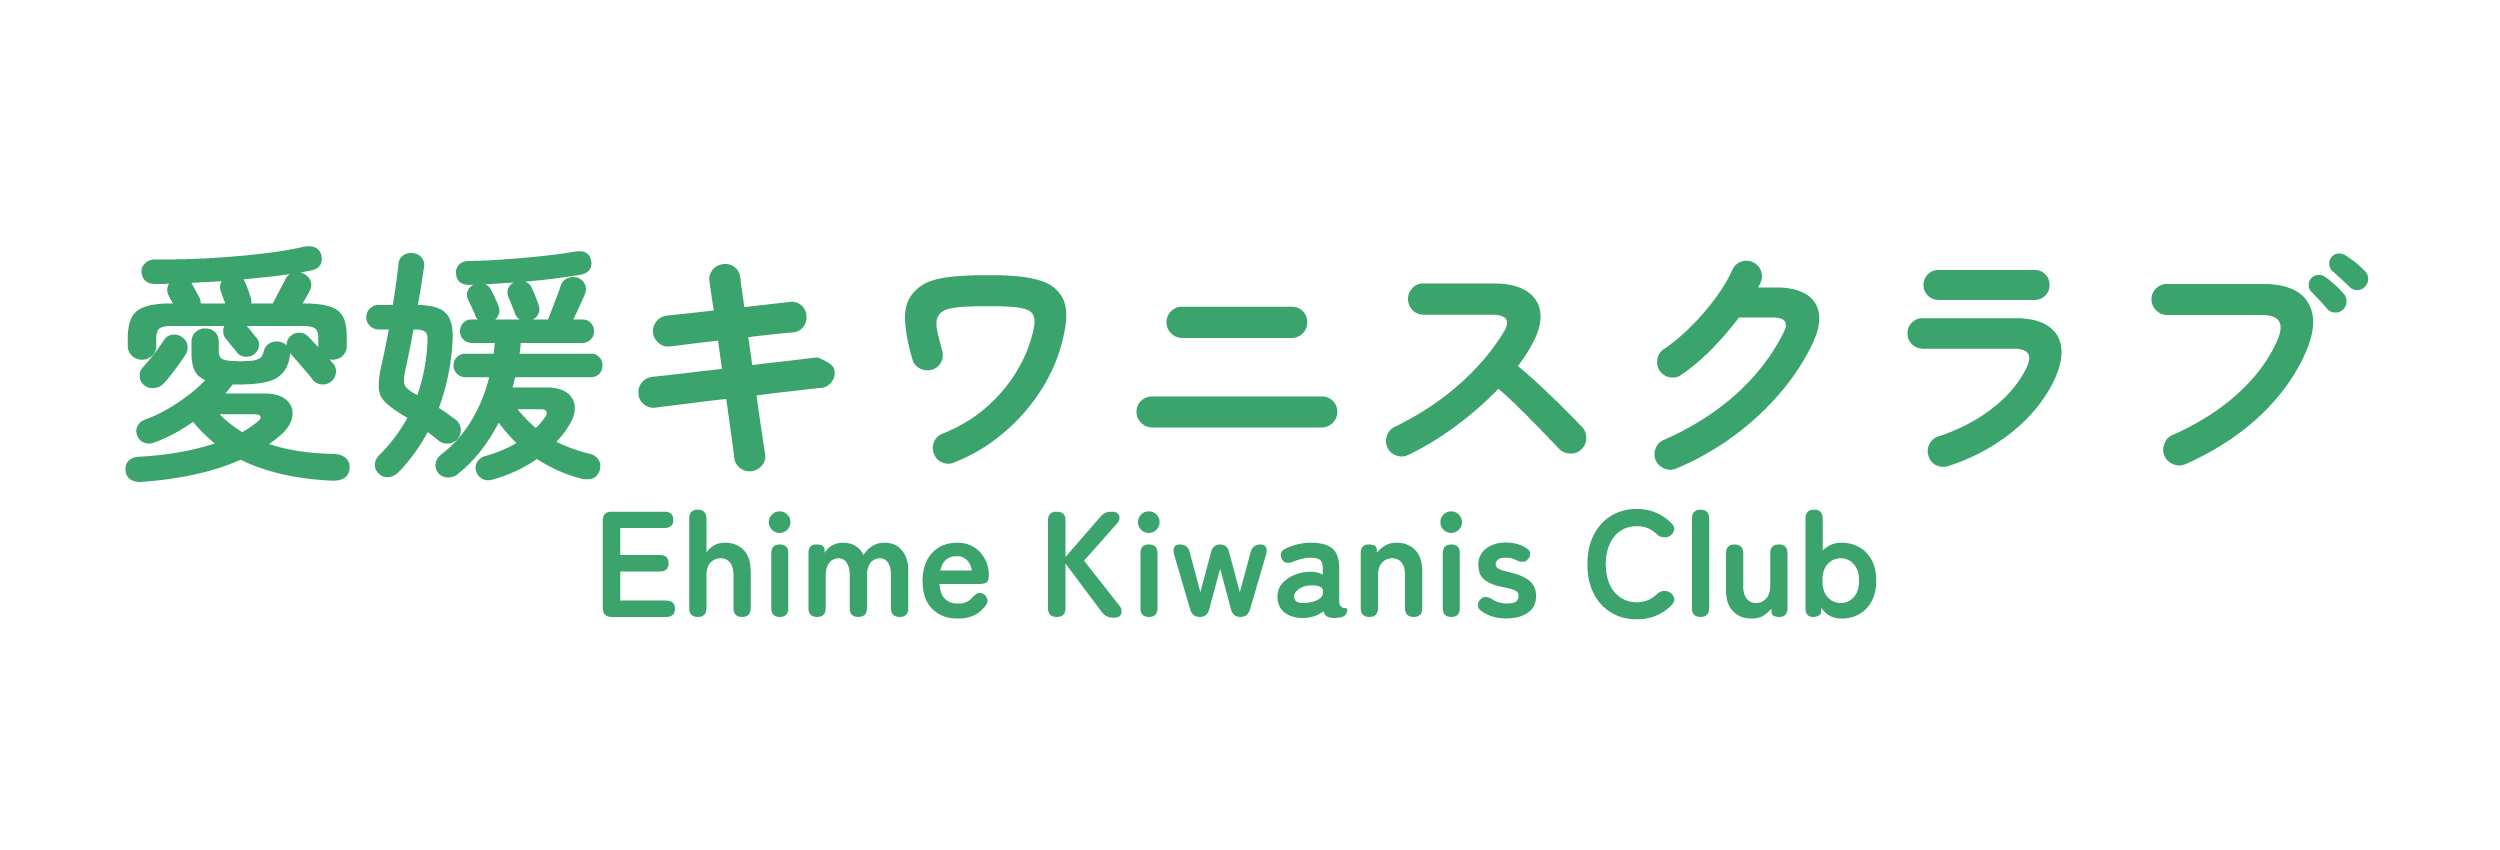 愛媛キワニスクラブのホームページを表示します